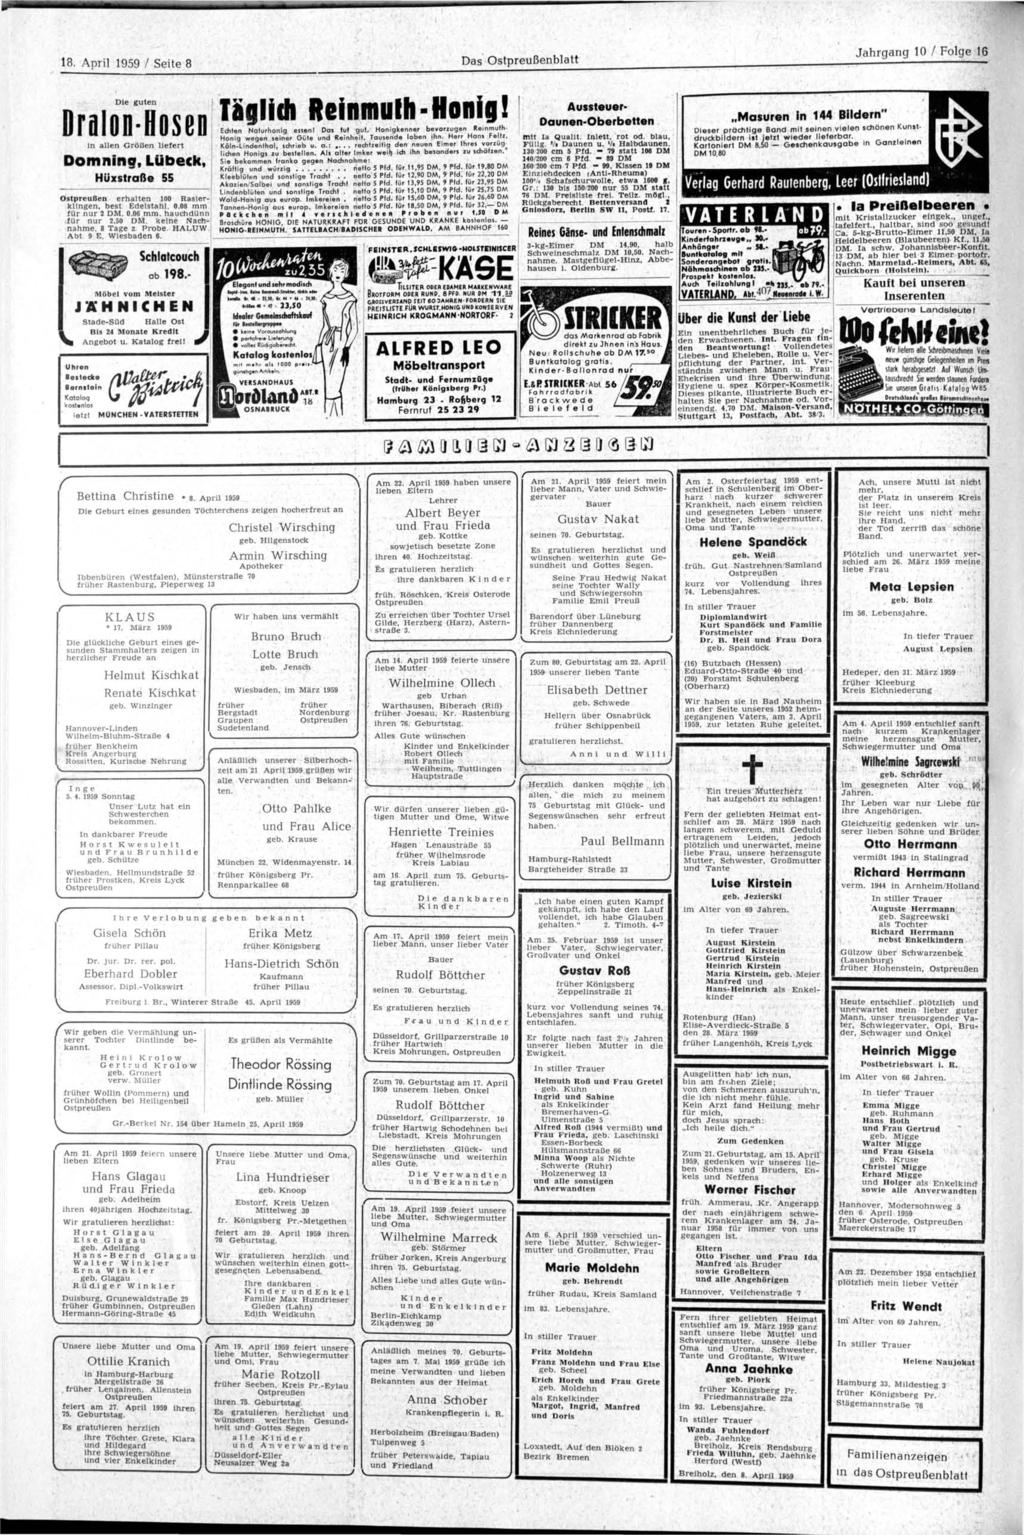 18. April 1959 / Seite 8 Das blatt nralnn Sn«pn Täglich Reinmulh-Honig! U h r e n B e s t e c k e Bernstein Katalog kostenlos letzt MÜNCHEN-VATERSTETTEN FEINSTER.